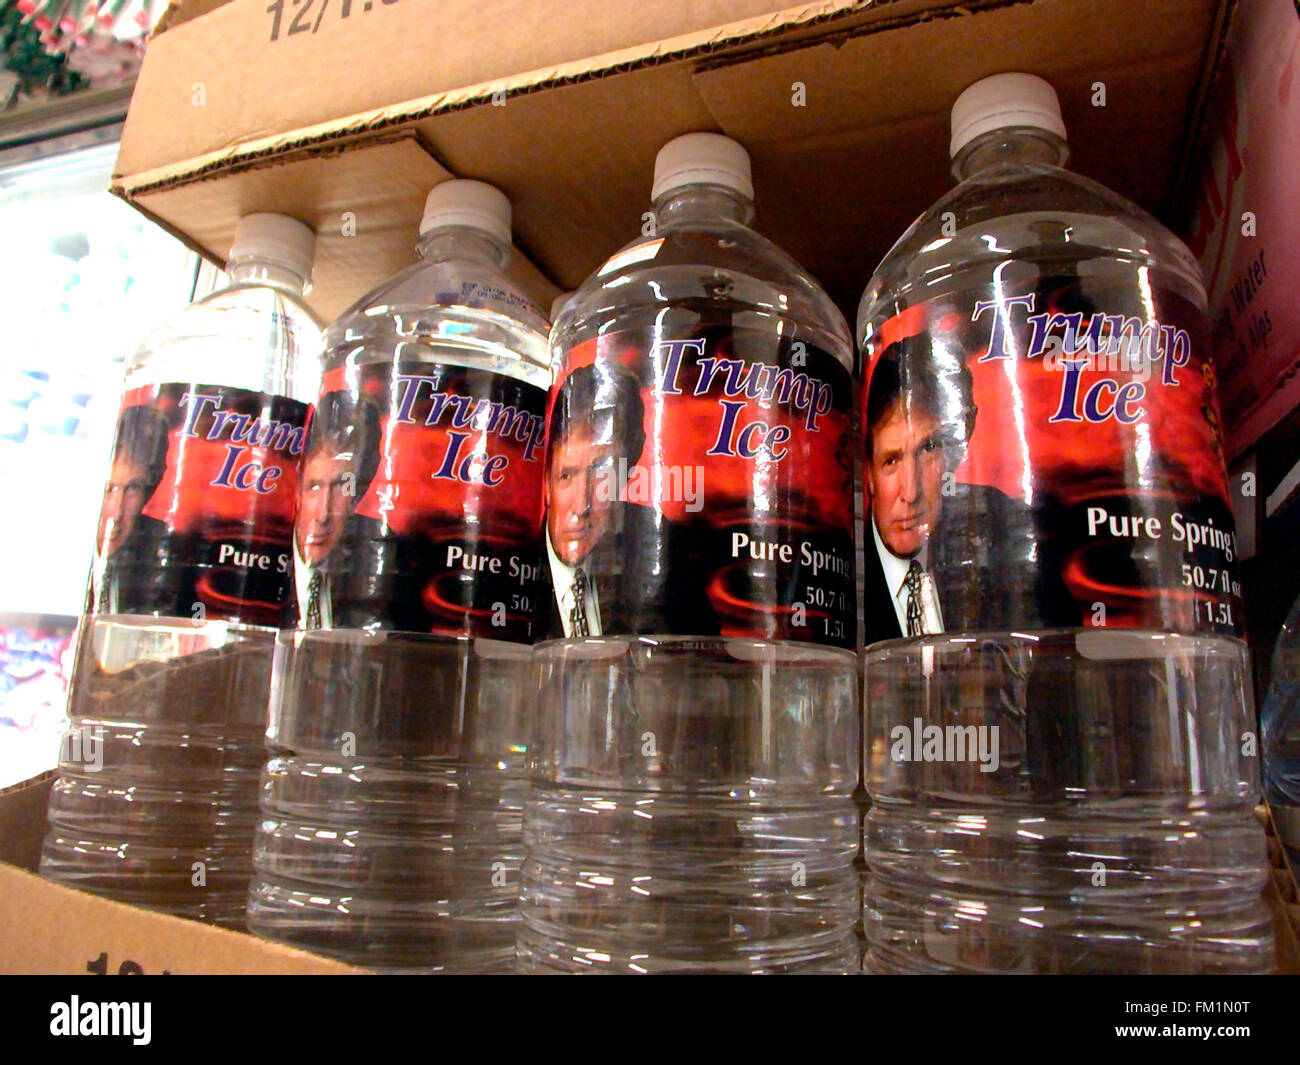 Eine Anzeige von "Trump Ice" in Flaschen Wasser wird in einem Supermarkt am 22. Februar 2004 gesehen. Das Mineralwasser ist eine Verknüpfung mit dem hit Donald Trump / NBC Fernsehsendung "The Apprentice". (© Richard B. Levine) Stockfoto